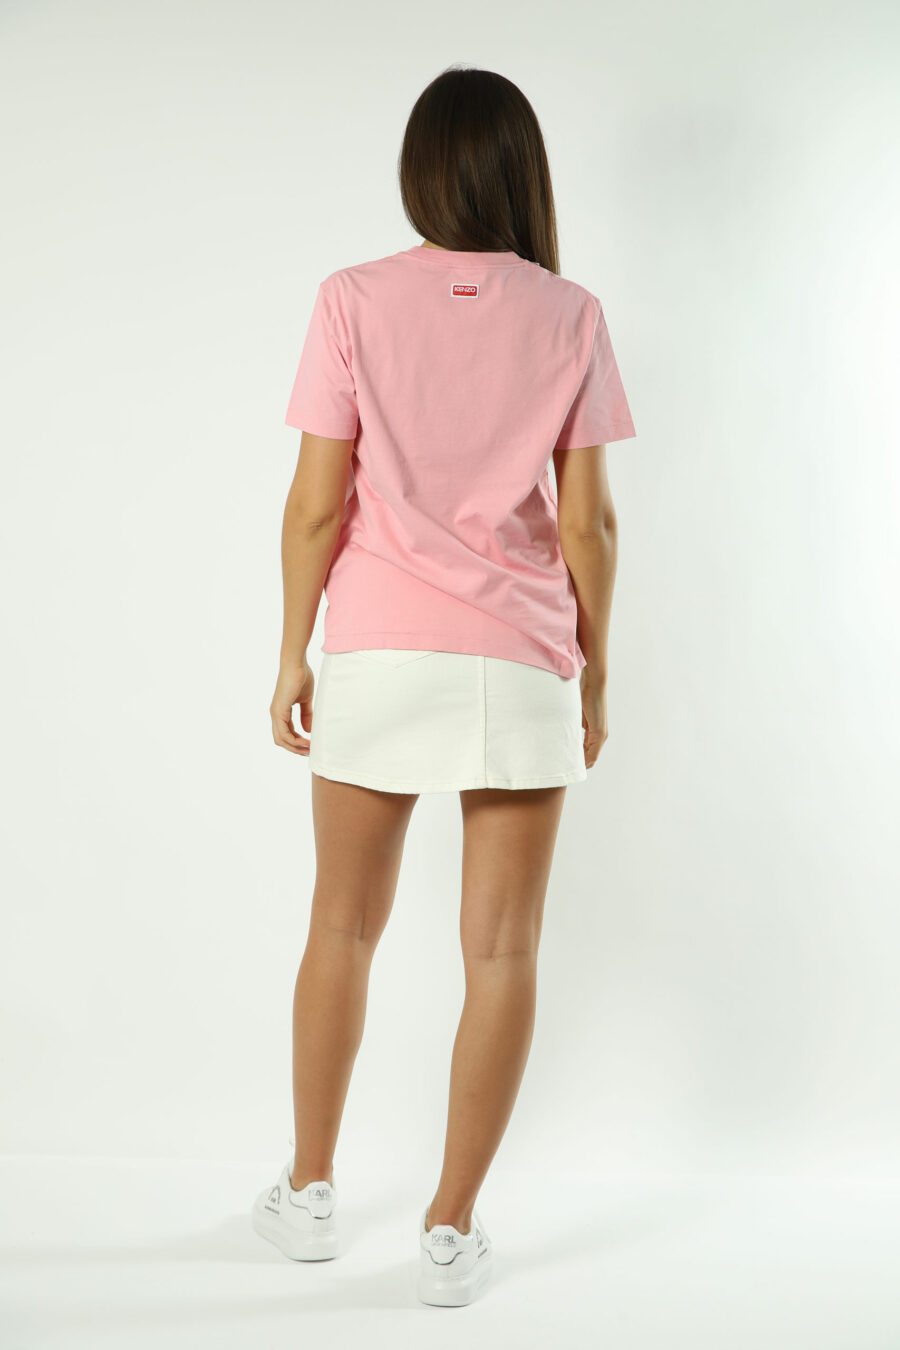 T-shirt rosa com maxilogo de flores laranja - Fotos 1407